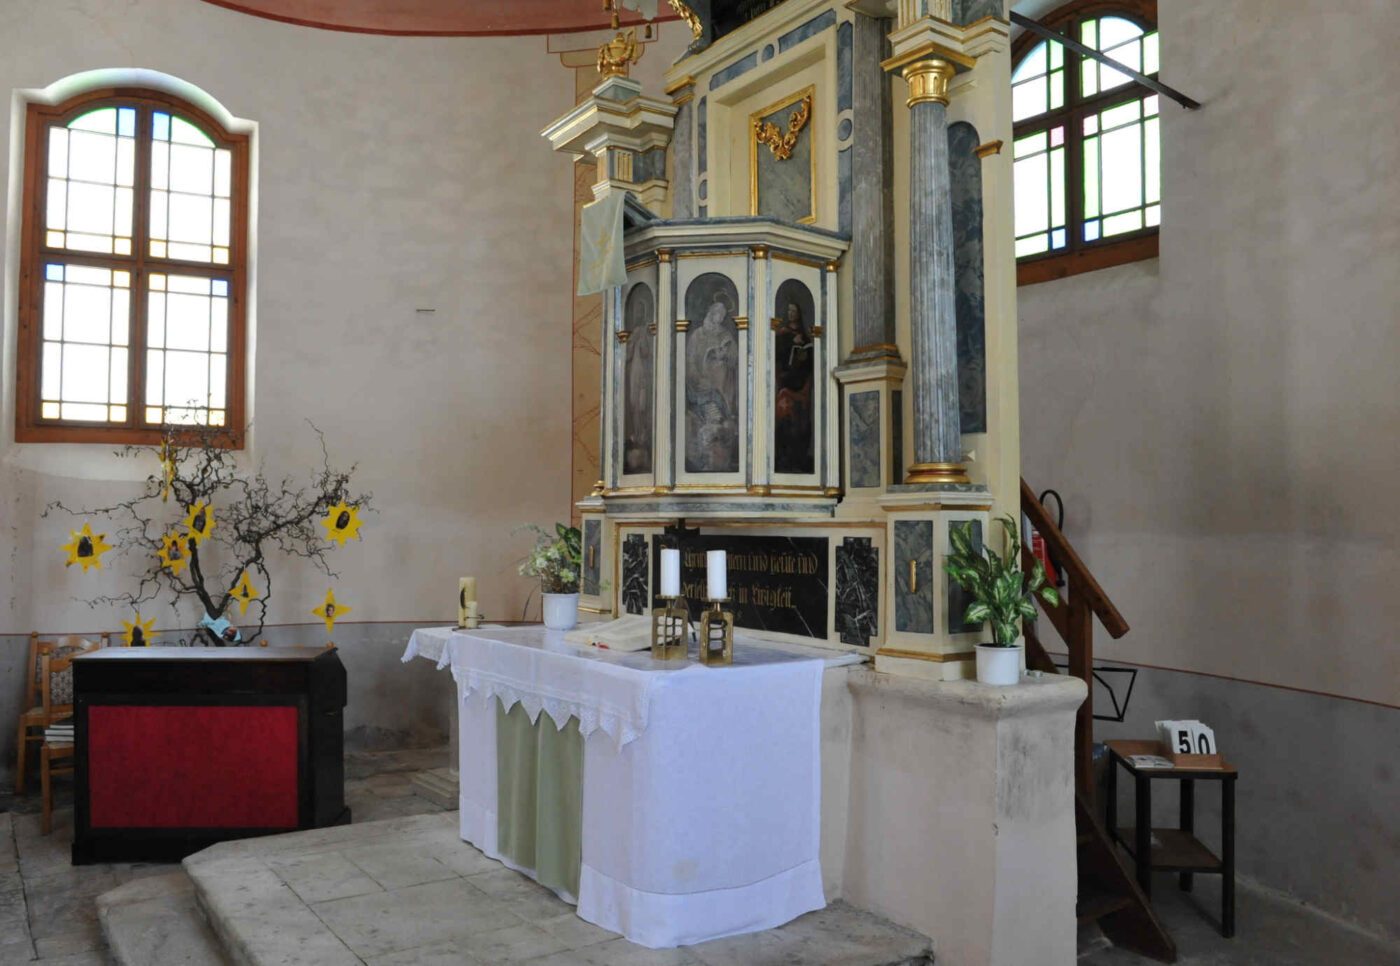 Die evangelische Kirche in Tschöran blickt auf eine lange Geschichte zurück. (Foto: epd/Uschmann)